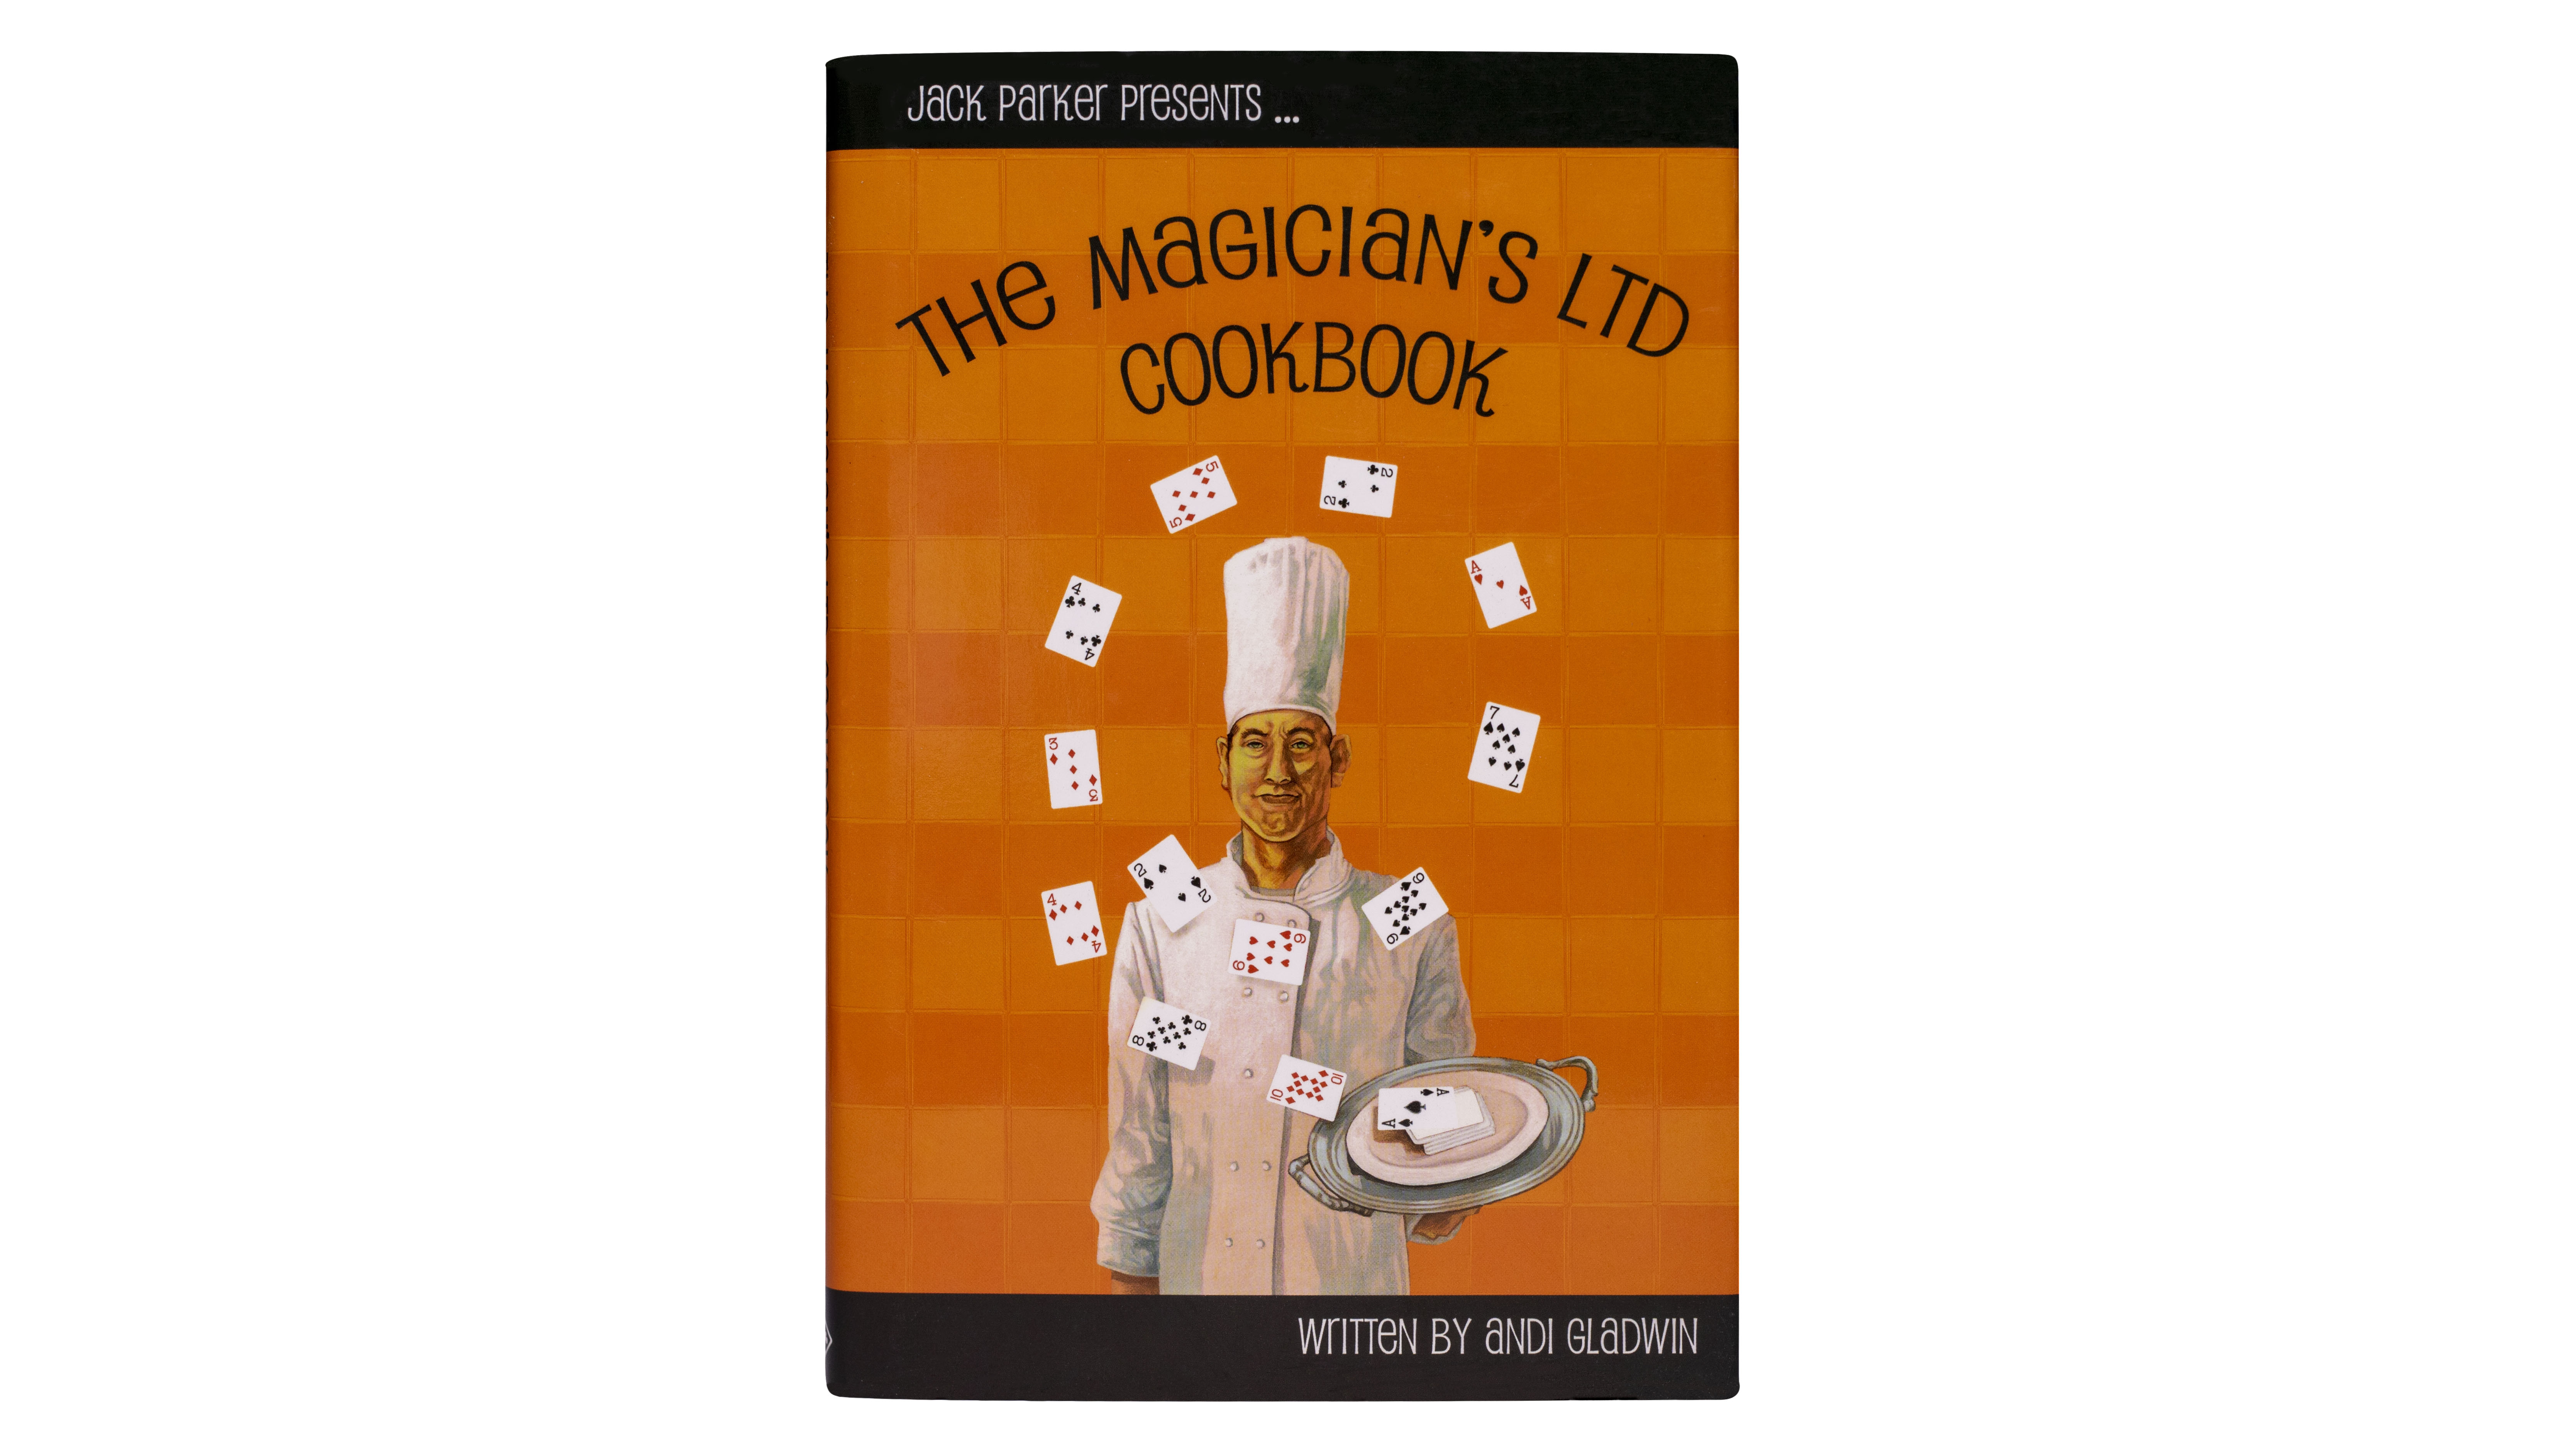 The Magicians Ltd Cookbook